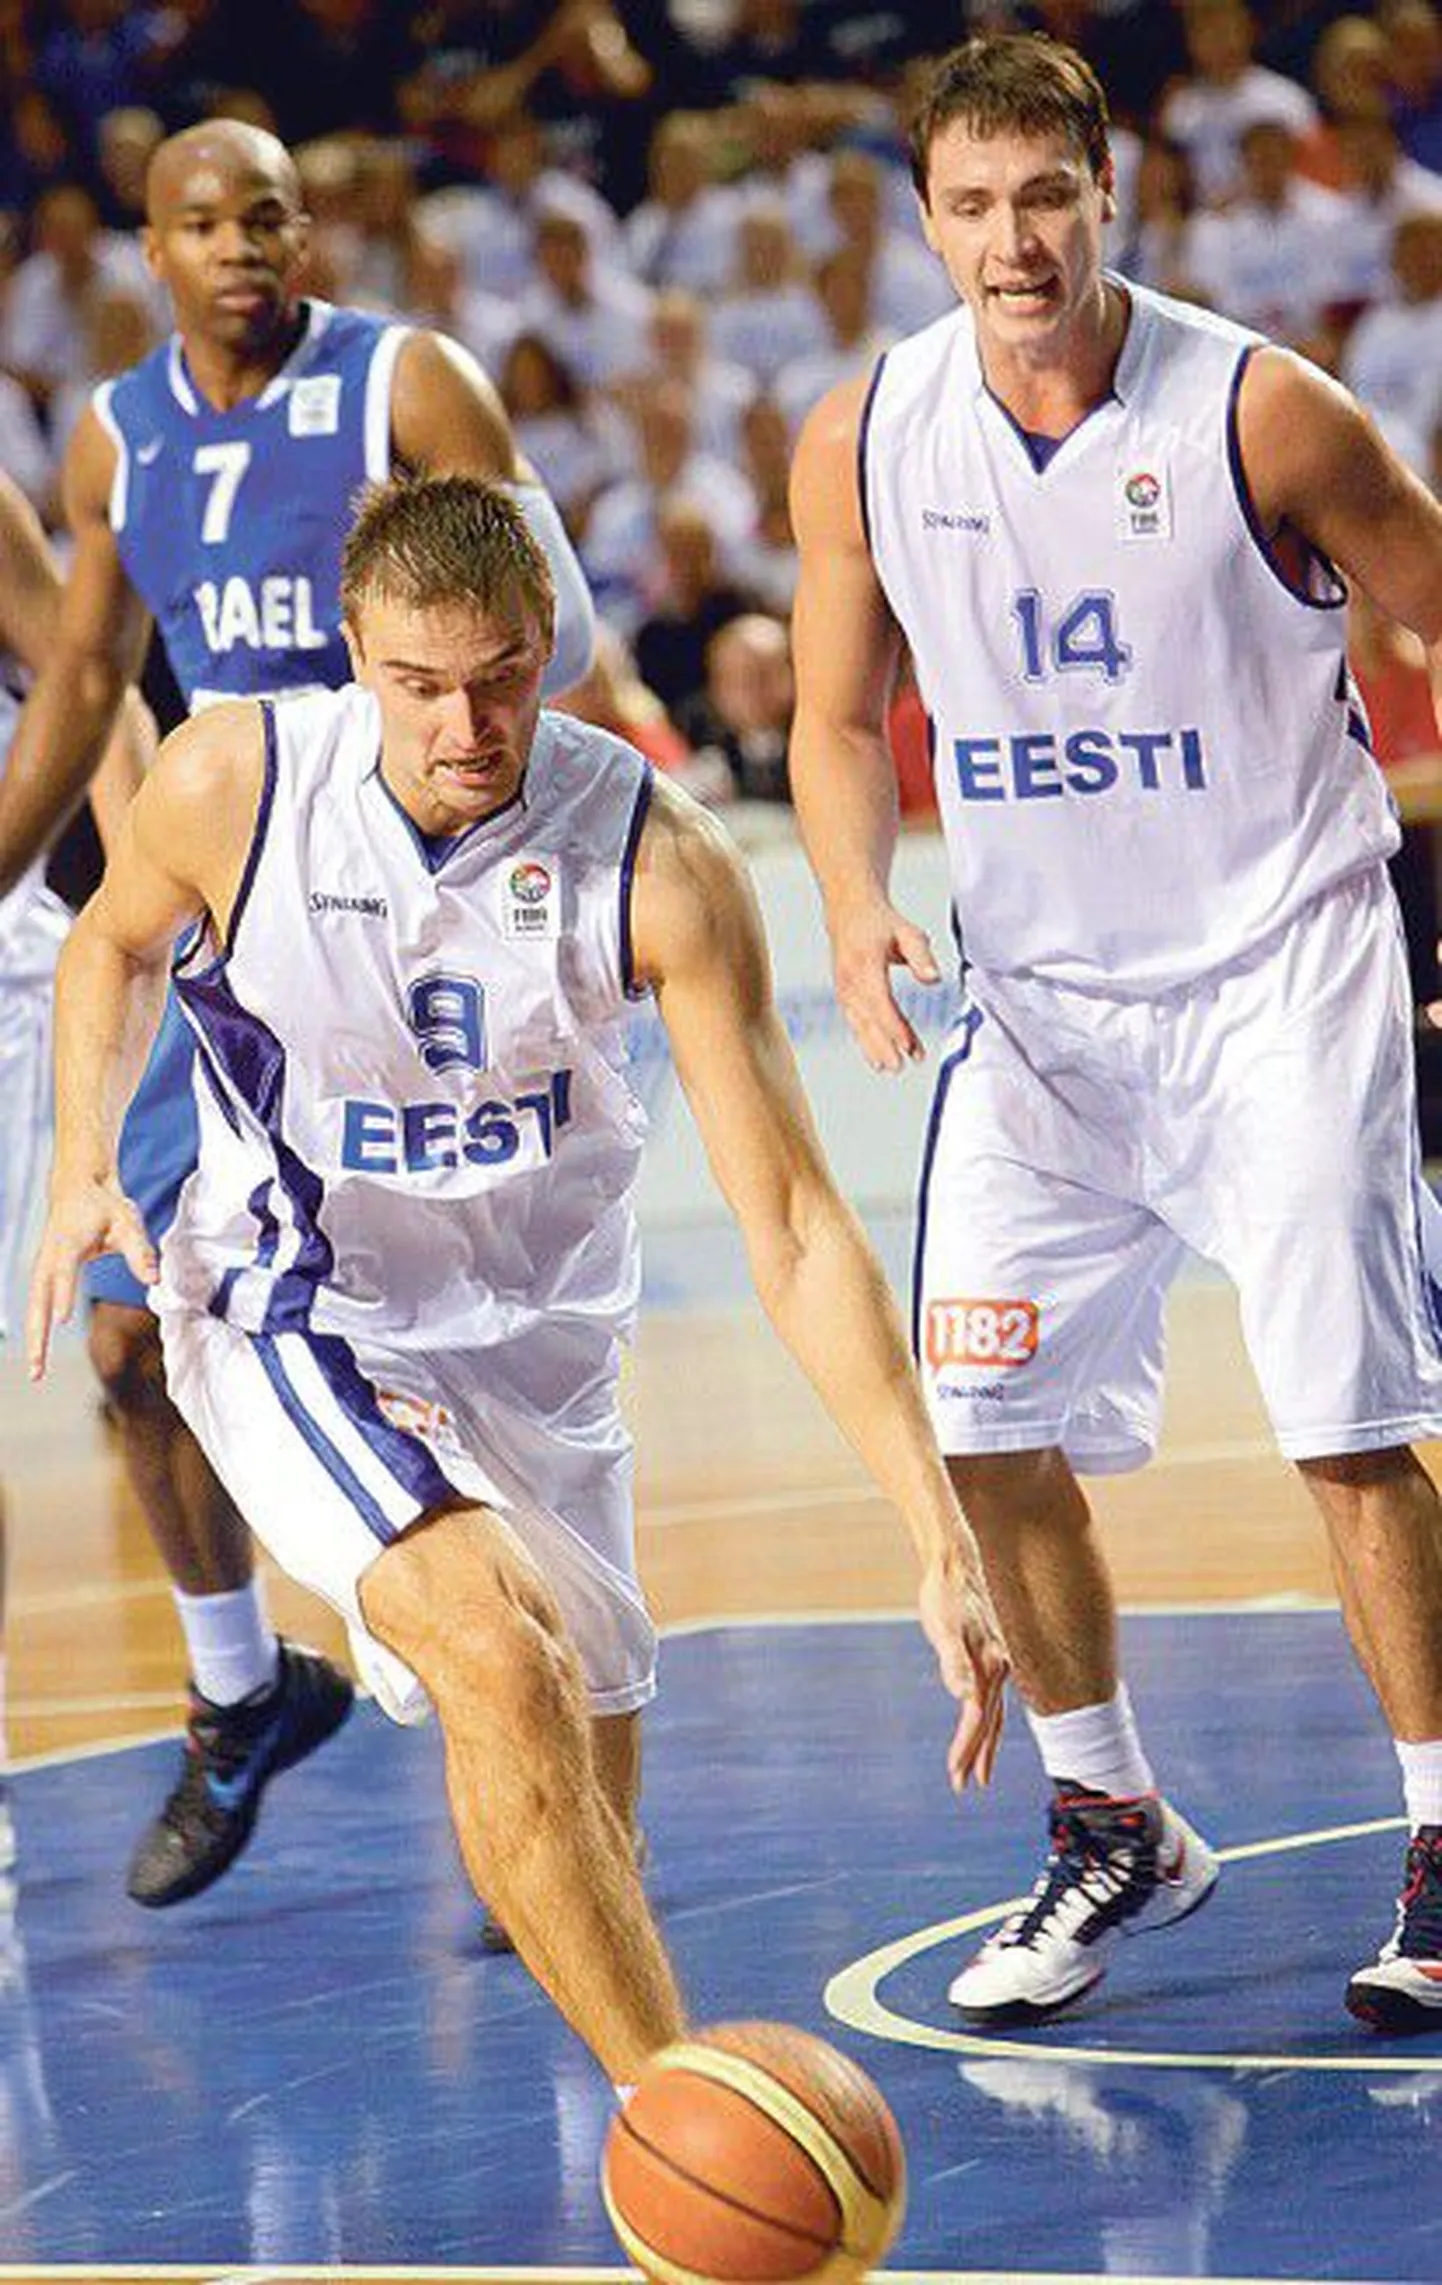 Kogenud Gregor Arbet (palliga) ja Kristjan Kangur on laupäeval Serbiaga mängides ühed Eesti koondise võtmemängijad.